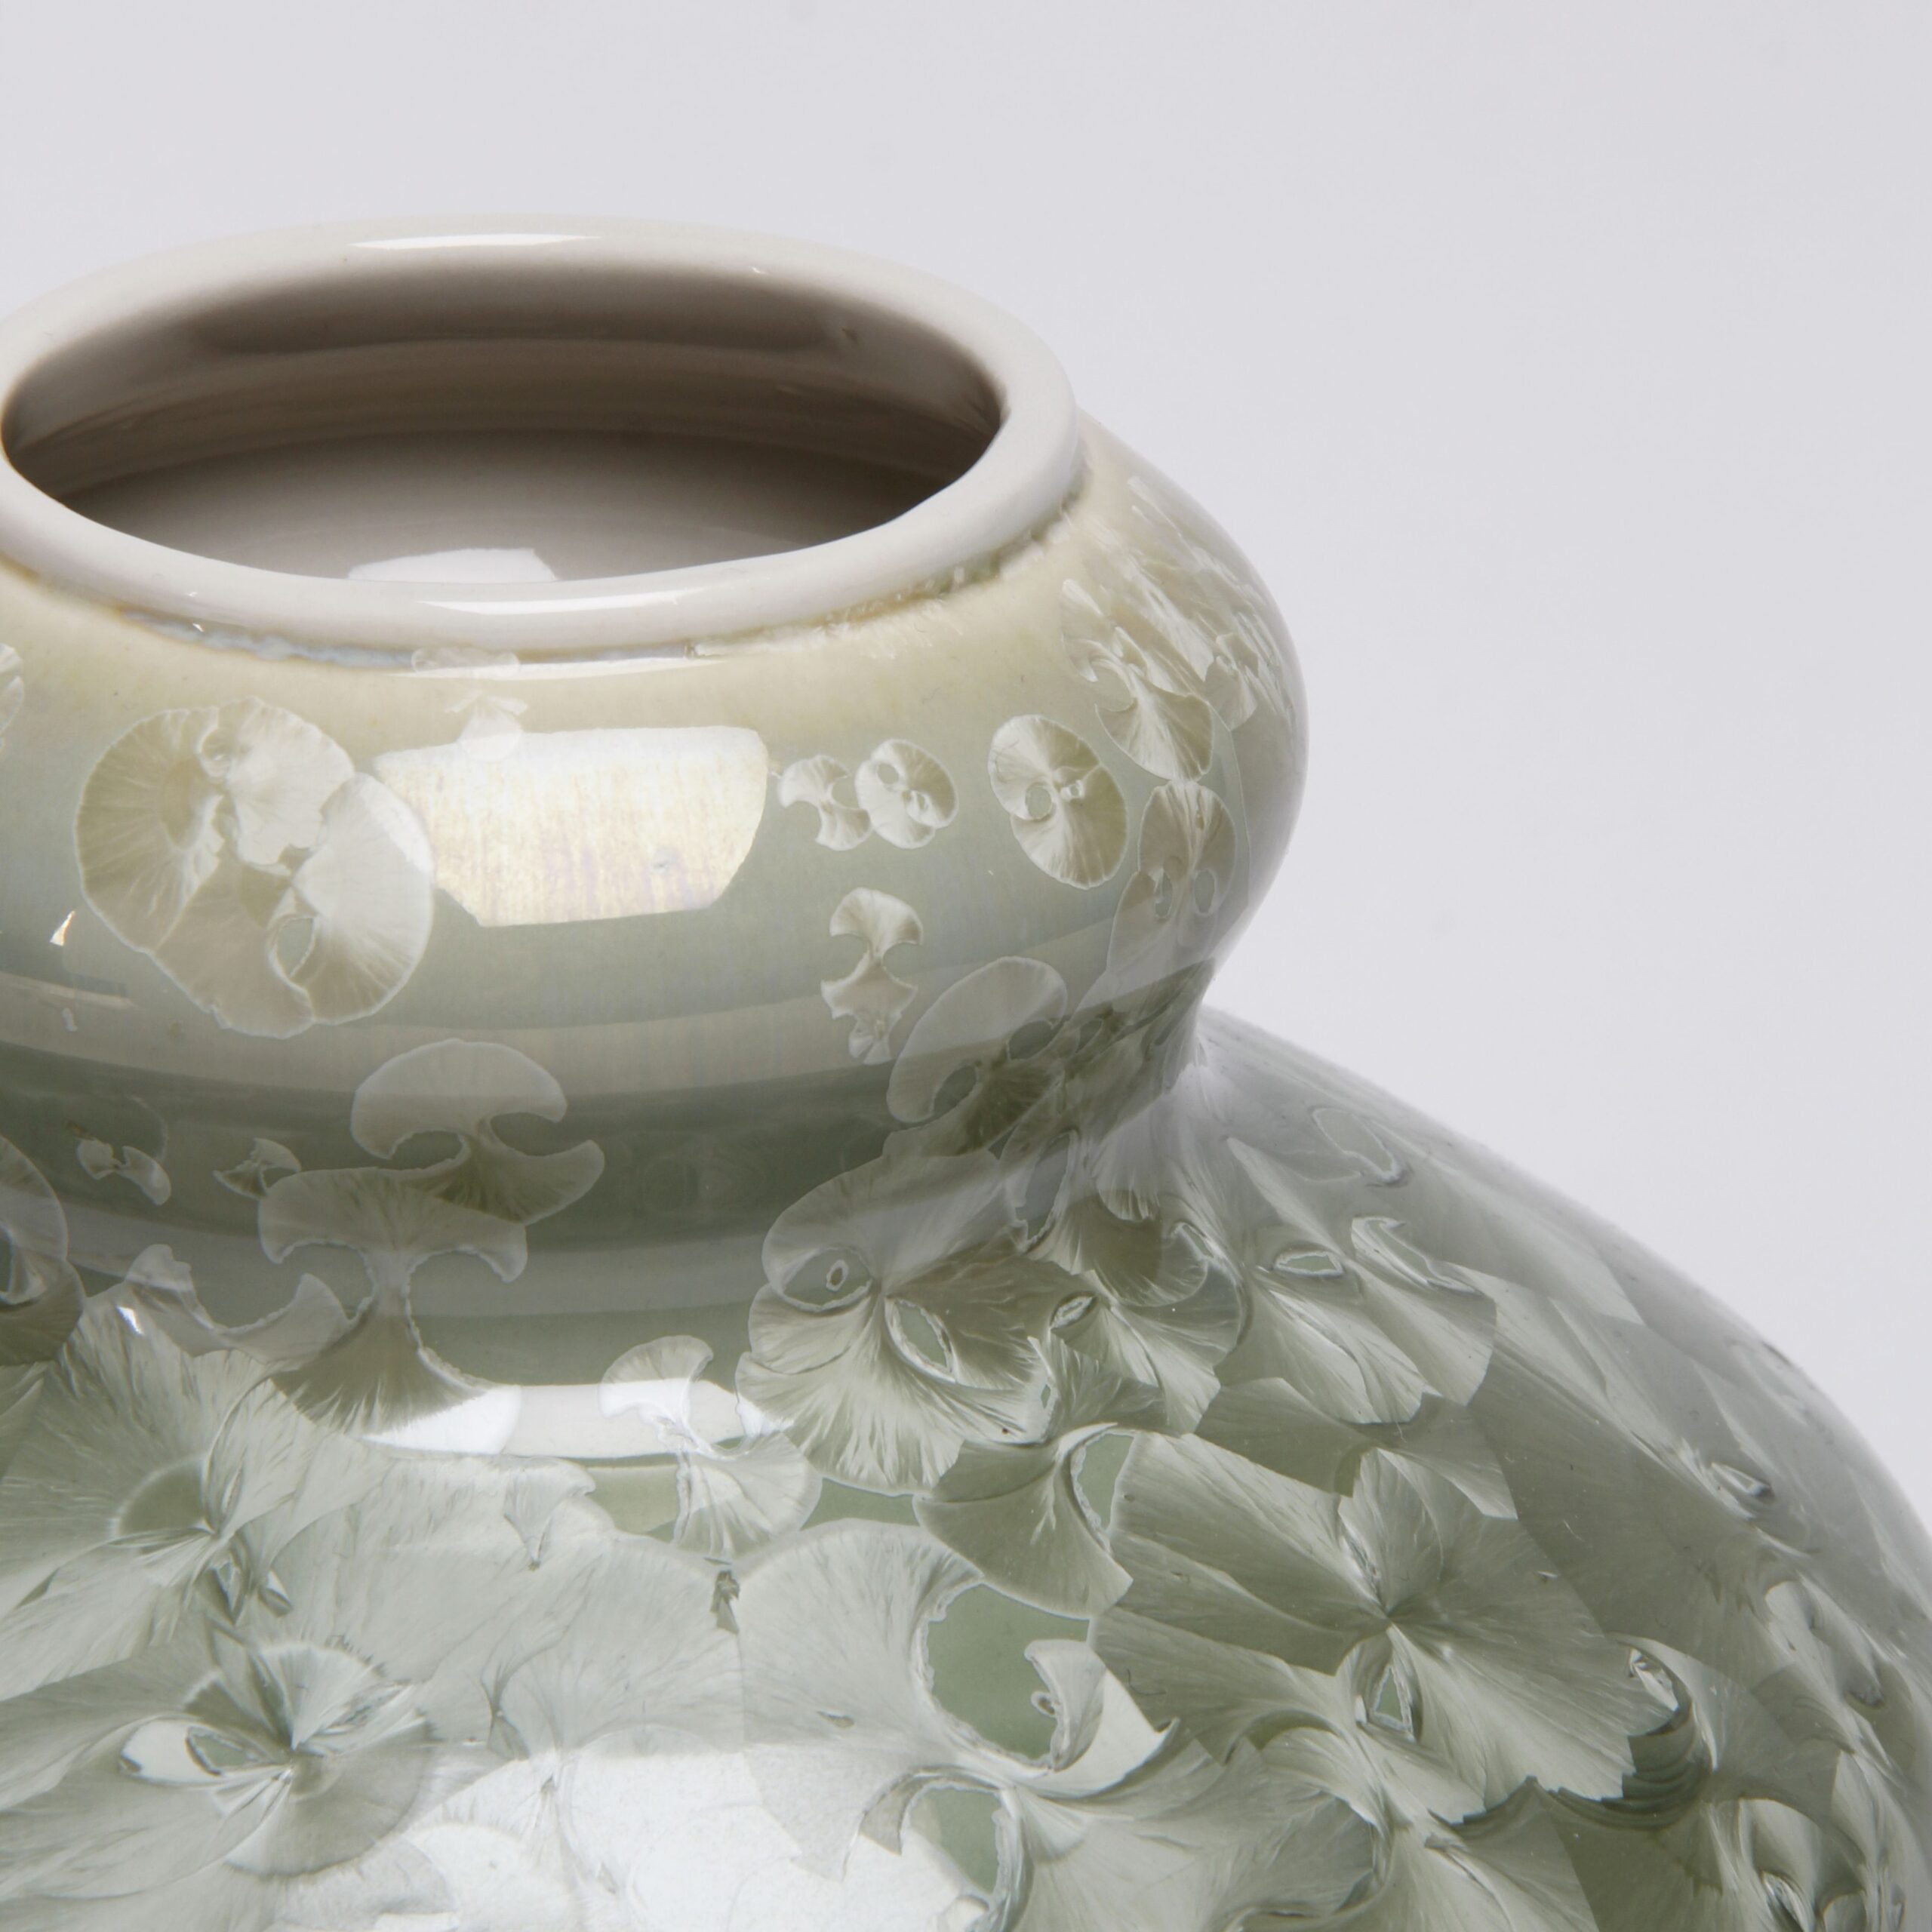 Yumiko Katsuya: Gold on Green Vase Product Image 4 of 4